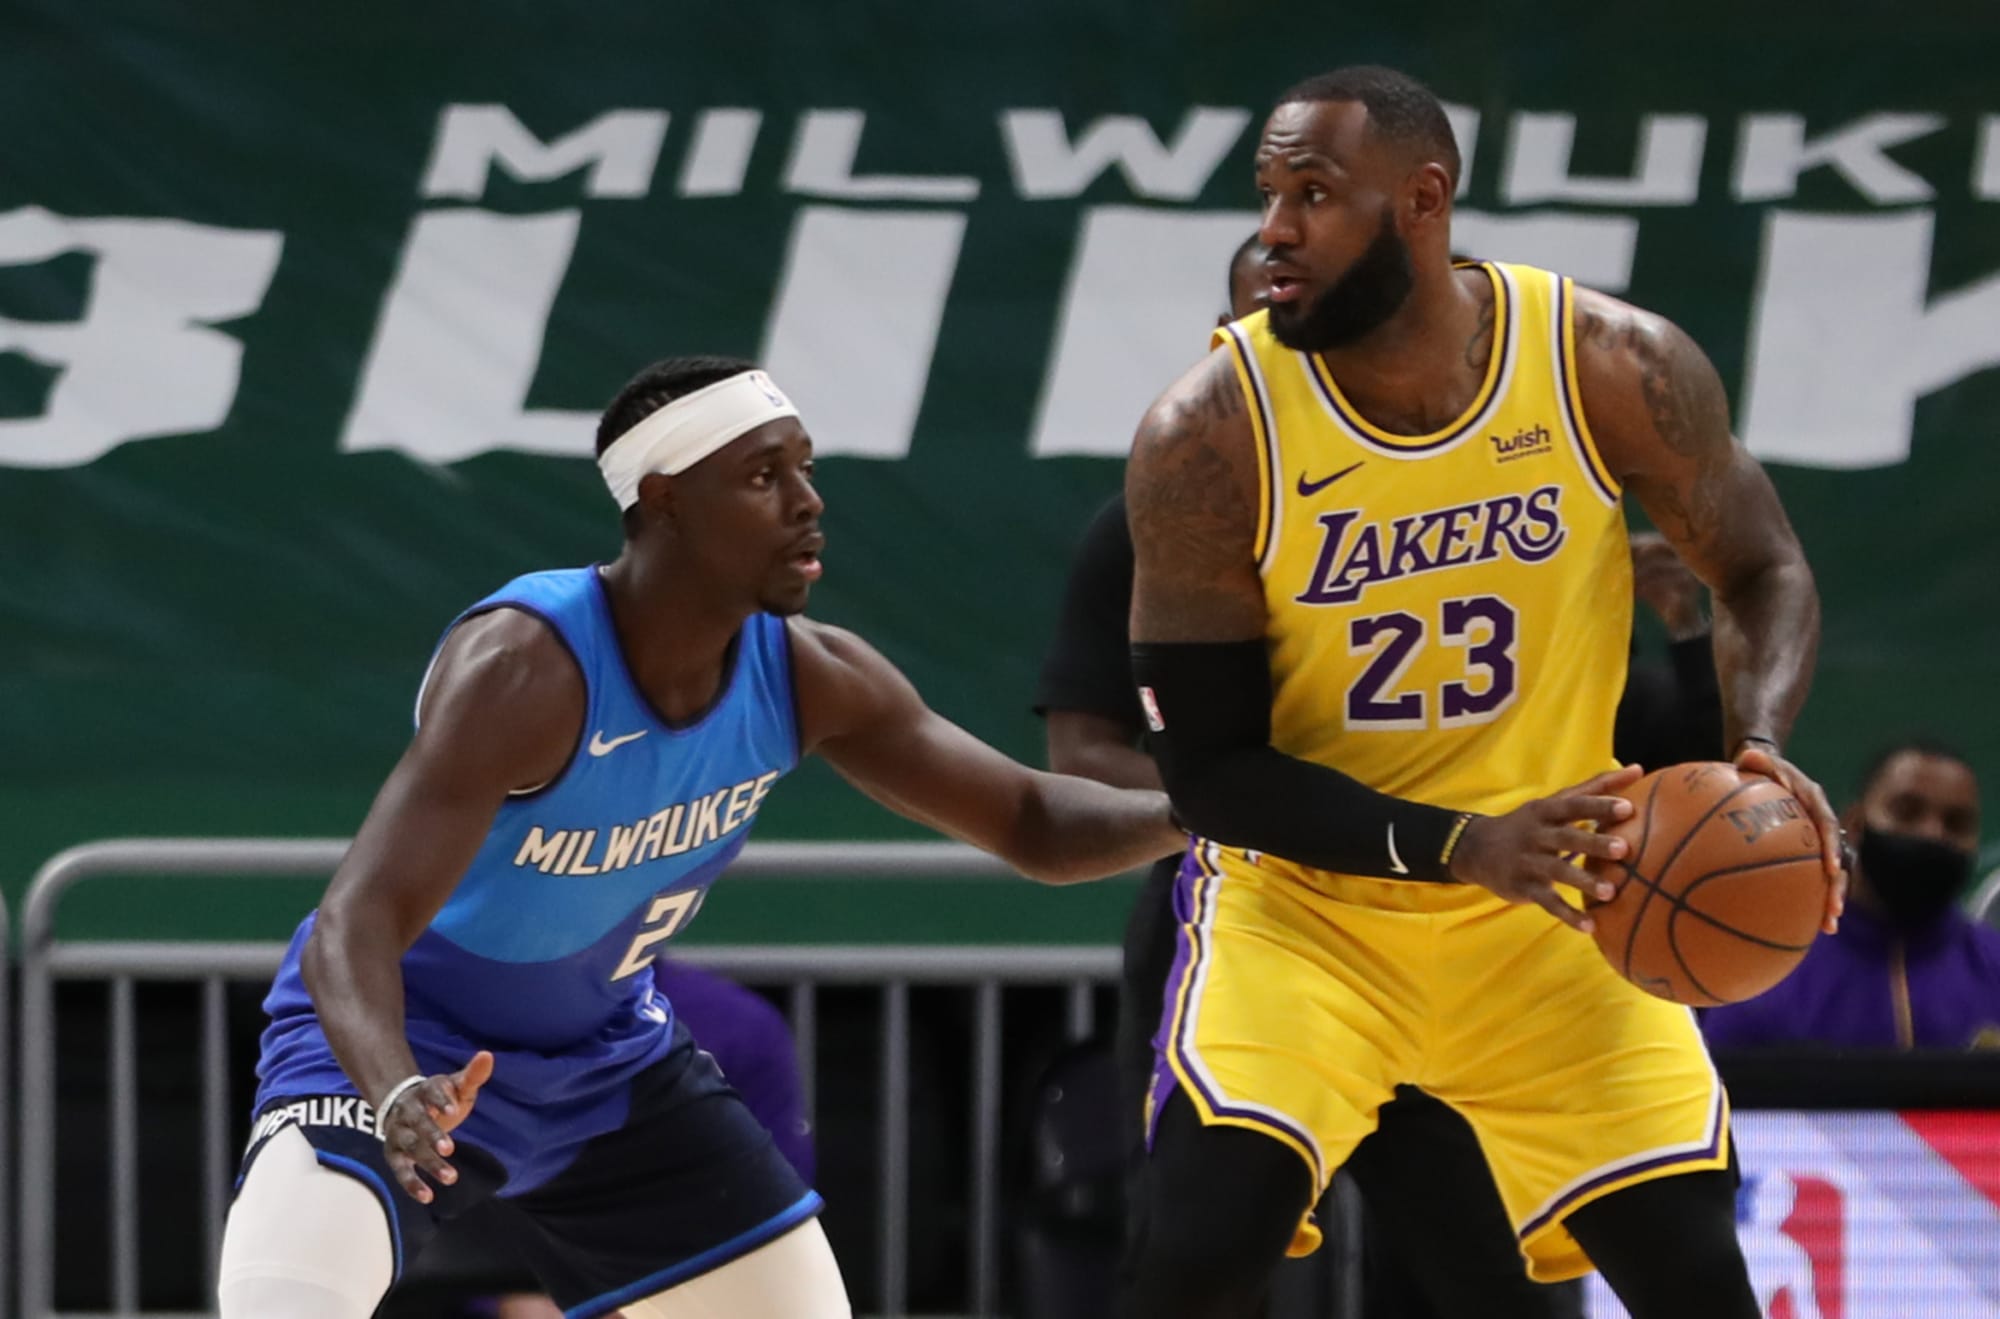 Lebron James' Lakers and the NBA's racial bias - Washington Times